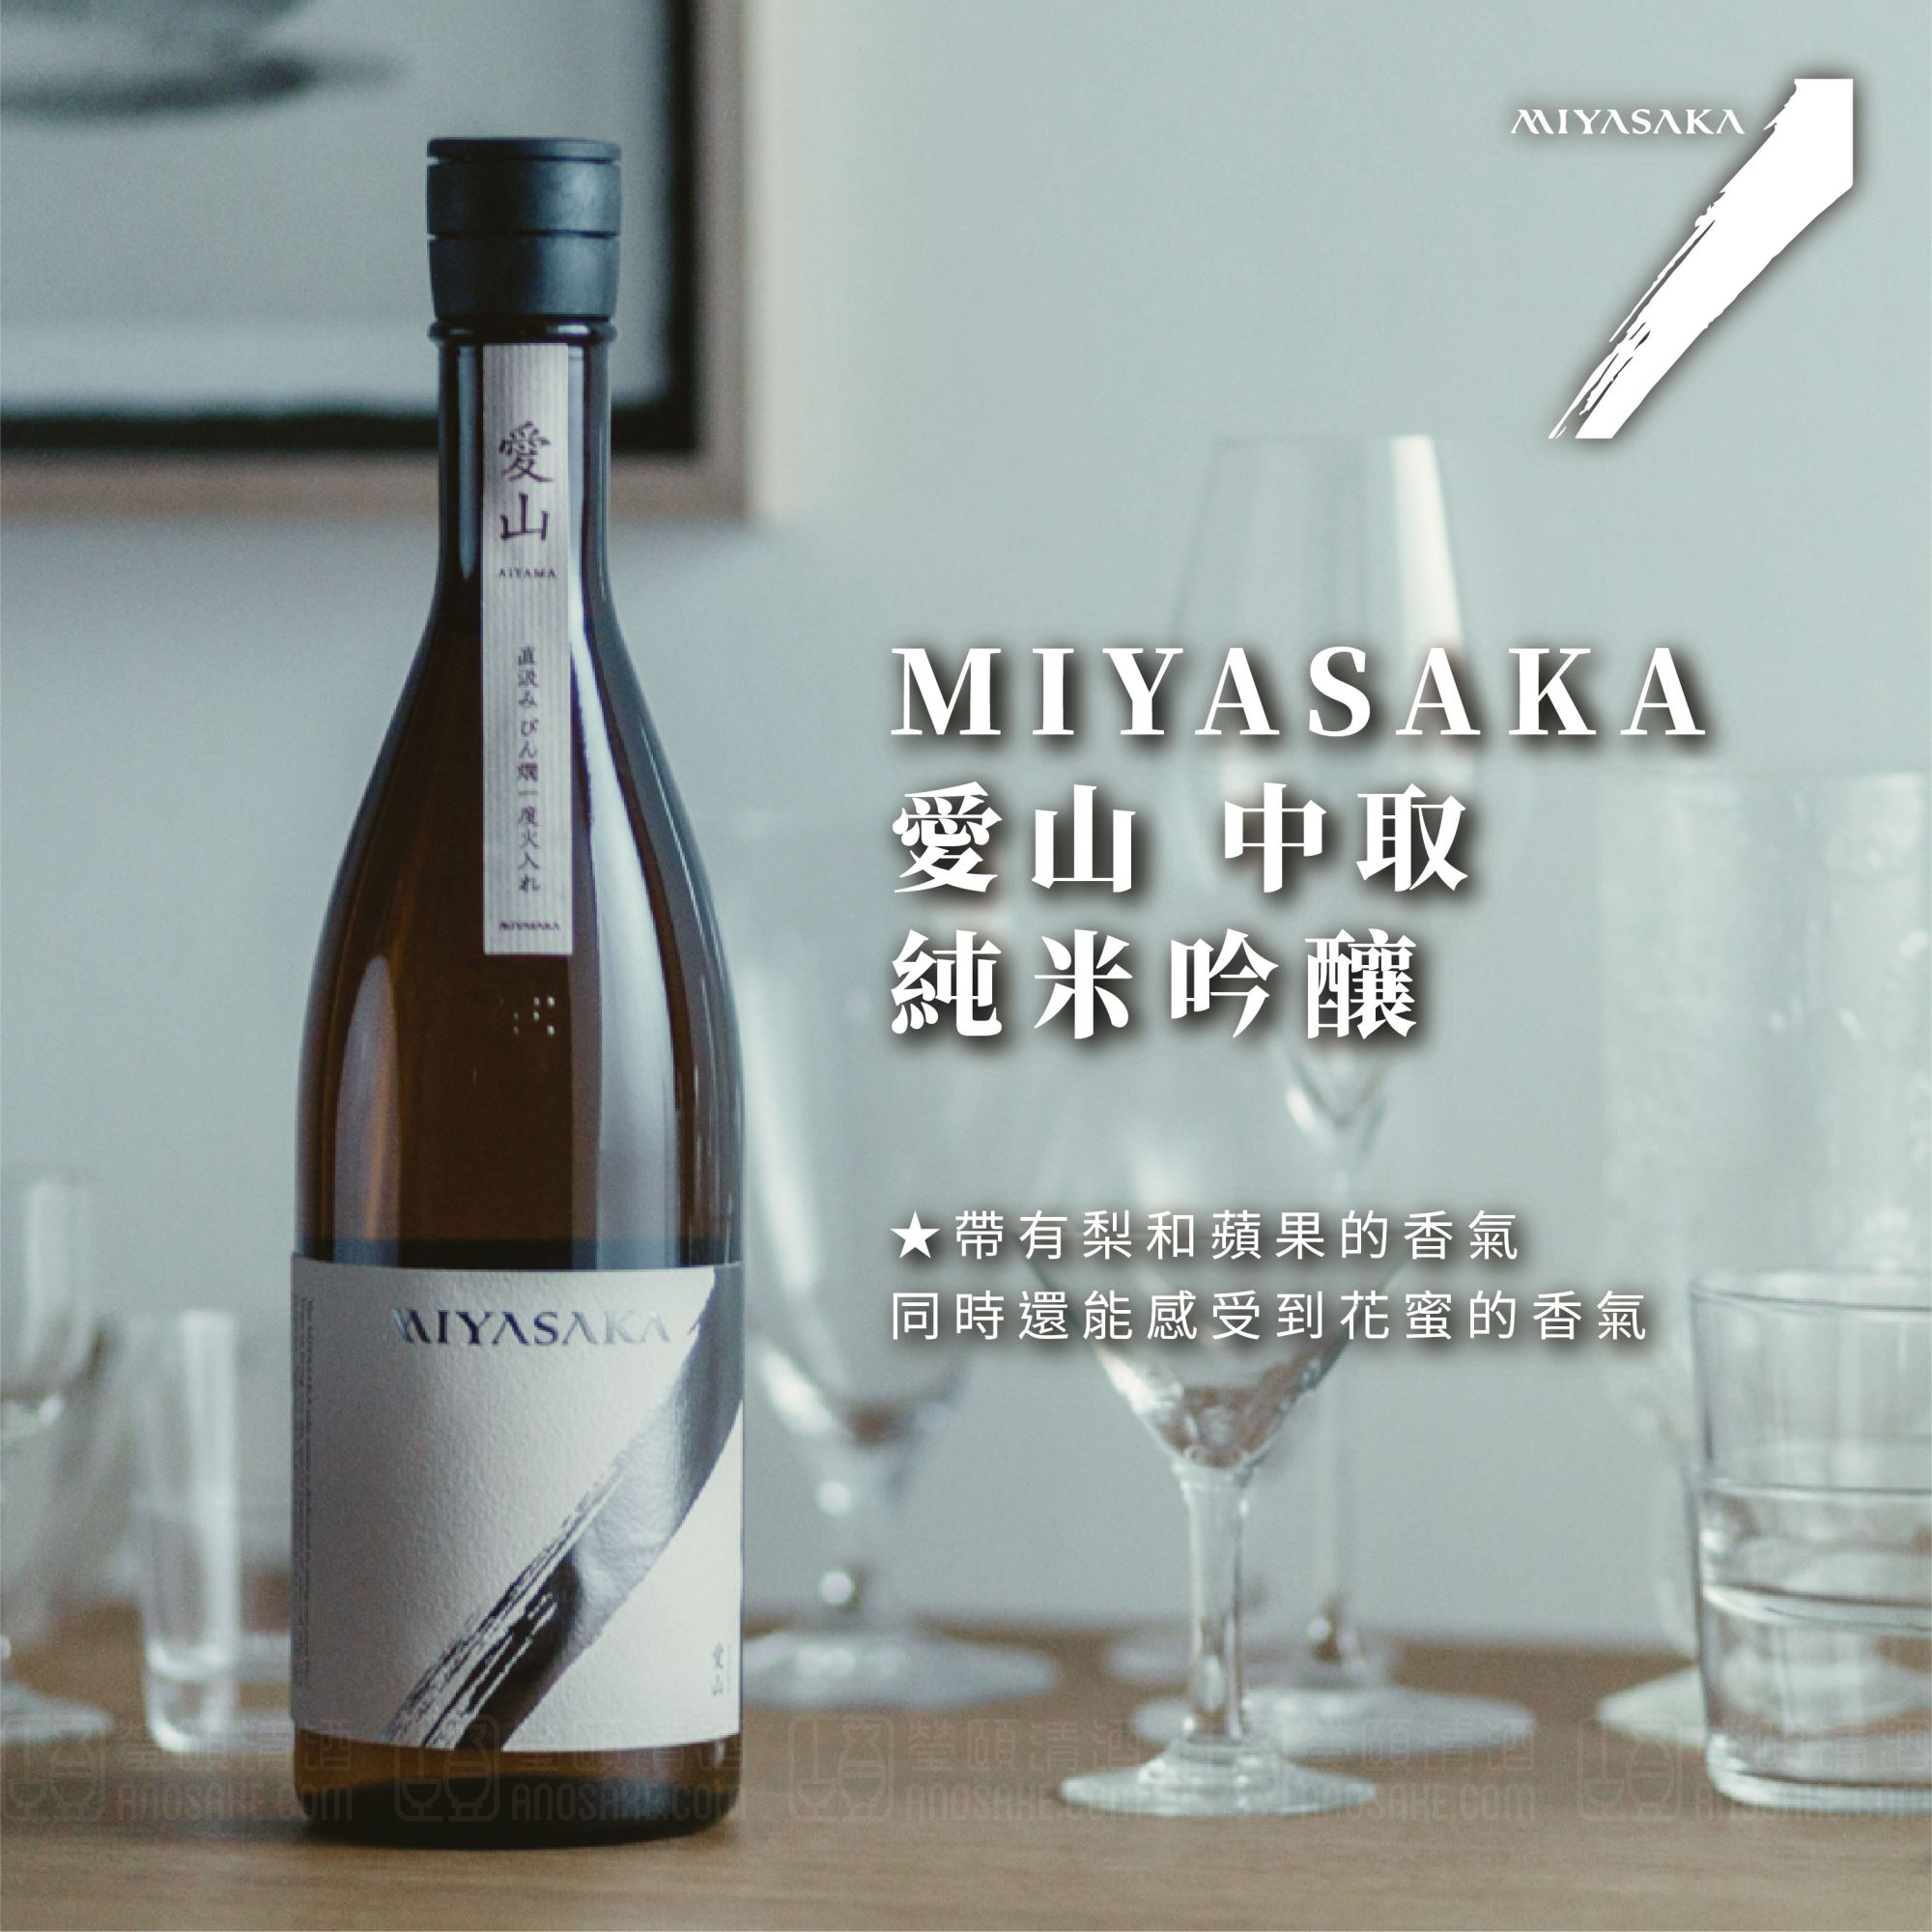 口感非常新鮮且多汁，酒體平衡做得很好！MIYASAKA 愛山 中取 純米吟釀